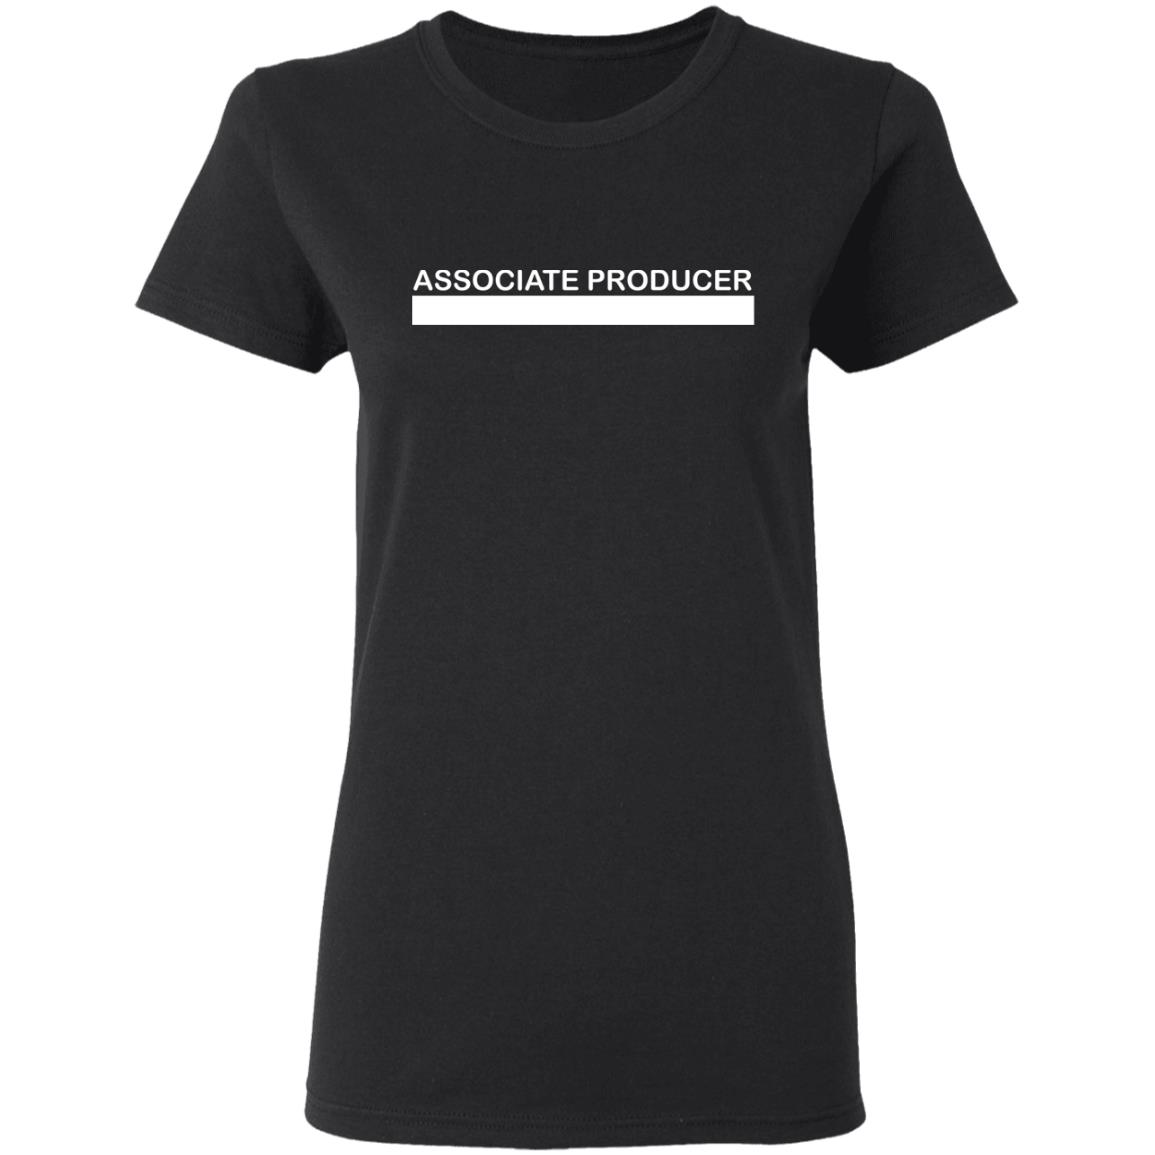 Associate producer shirt - Rockatee